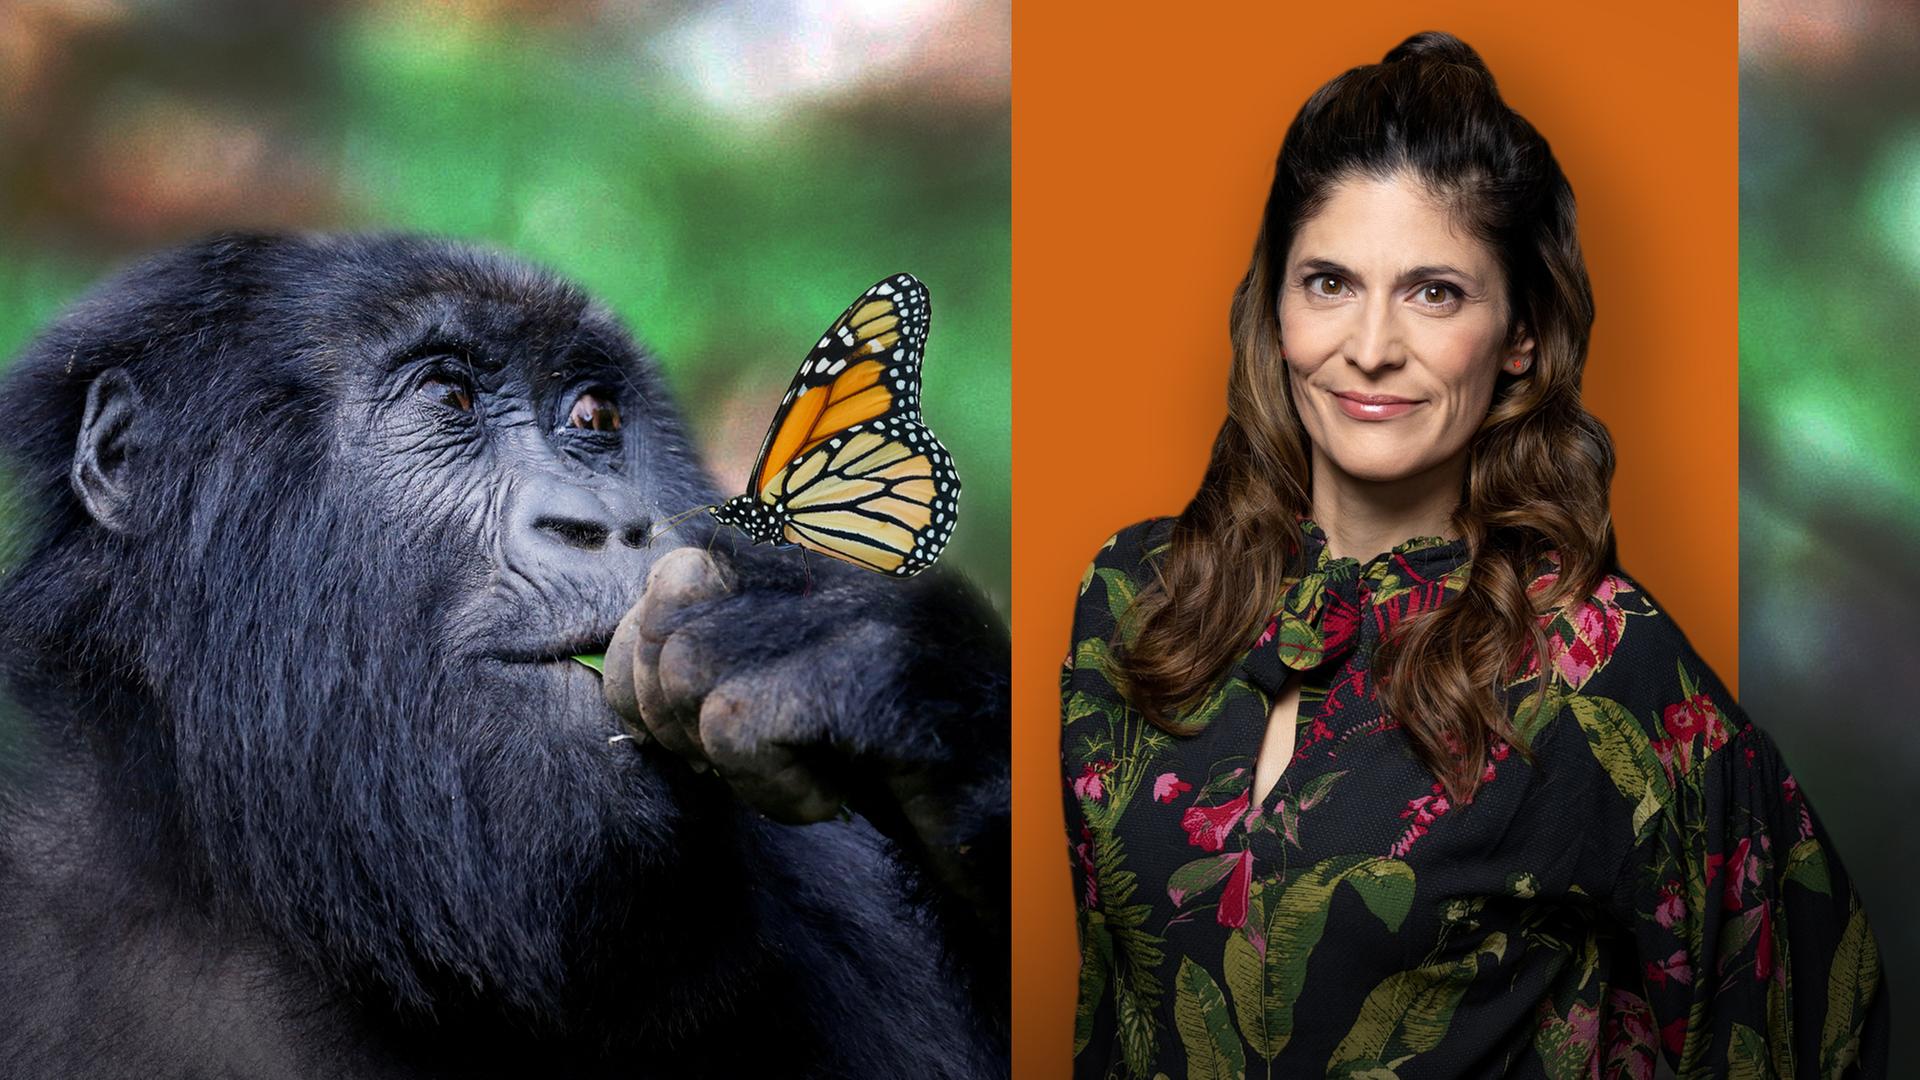 Katty Salié mit Gorilla und Schmetterling